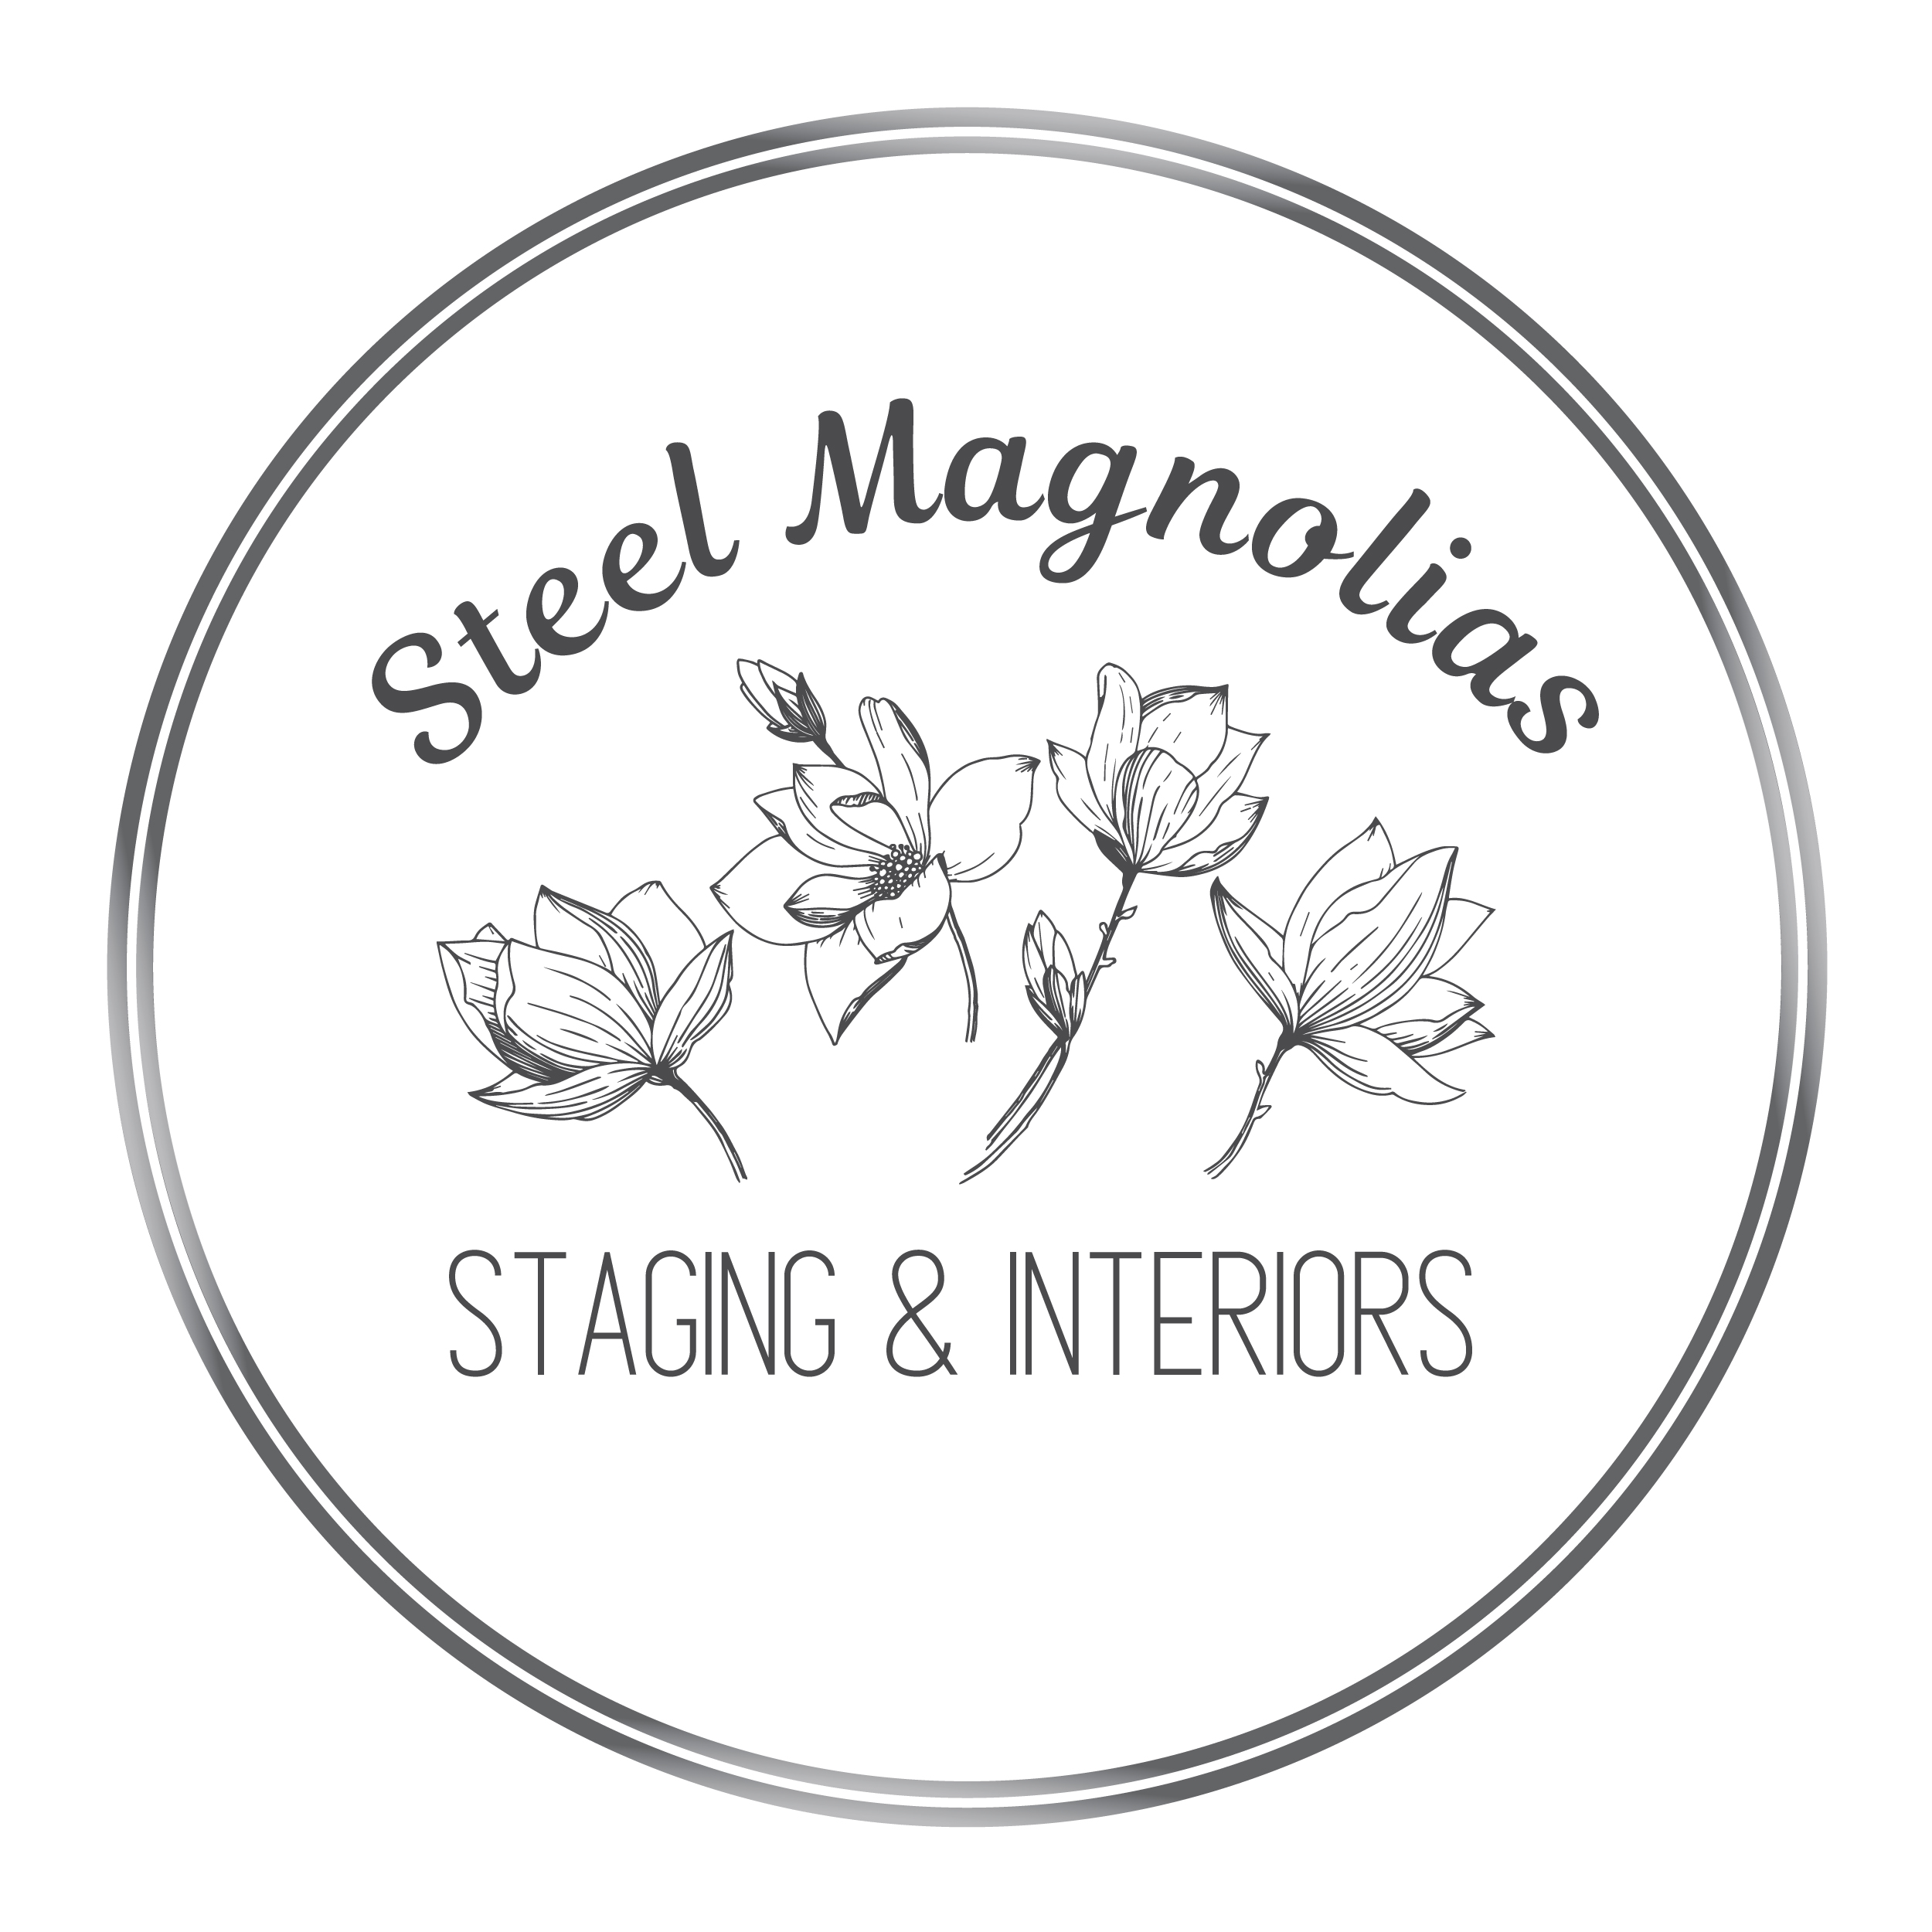 Steel Magnolias Staging & Interiors